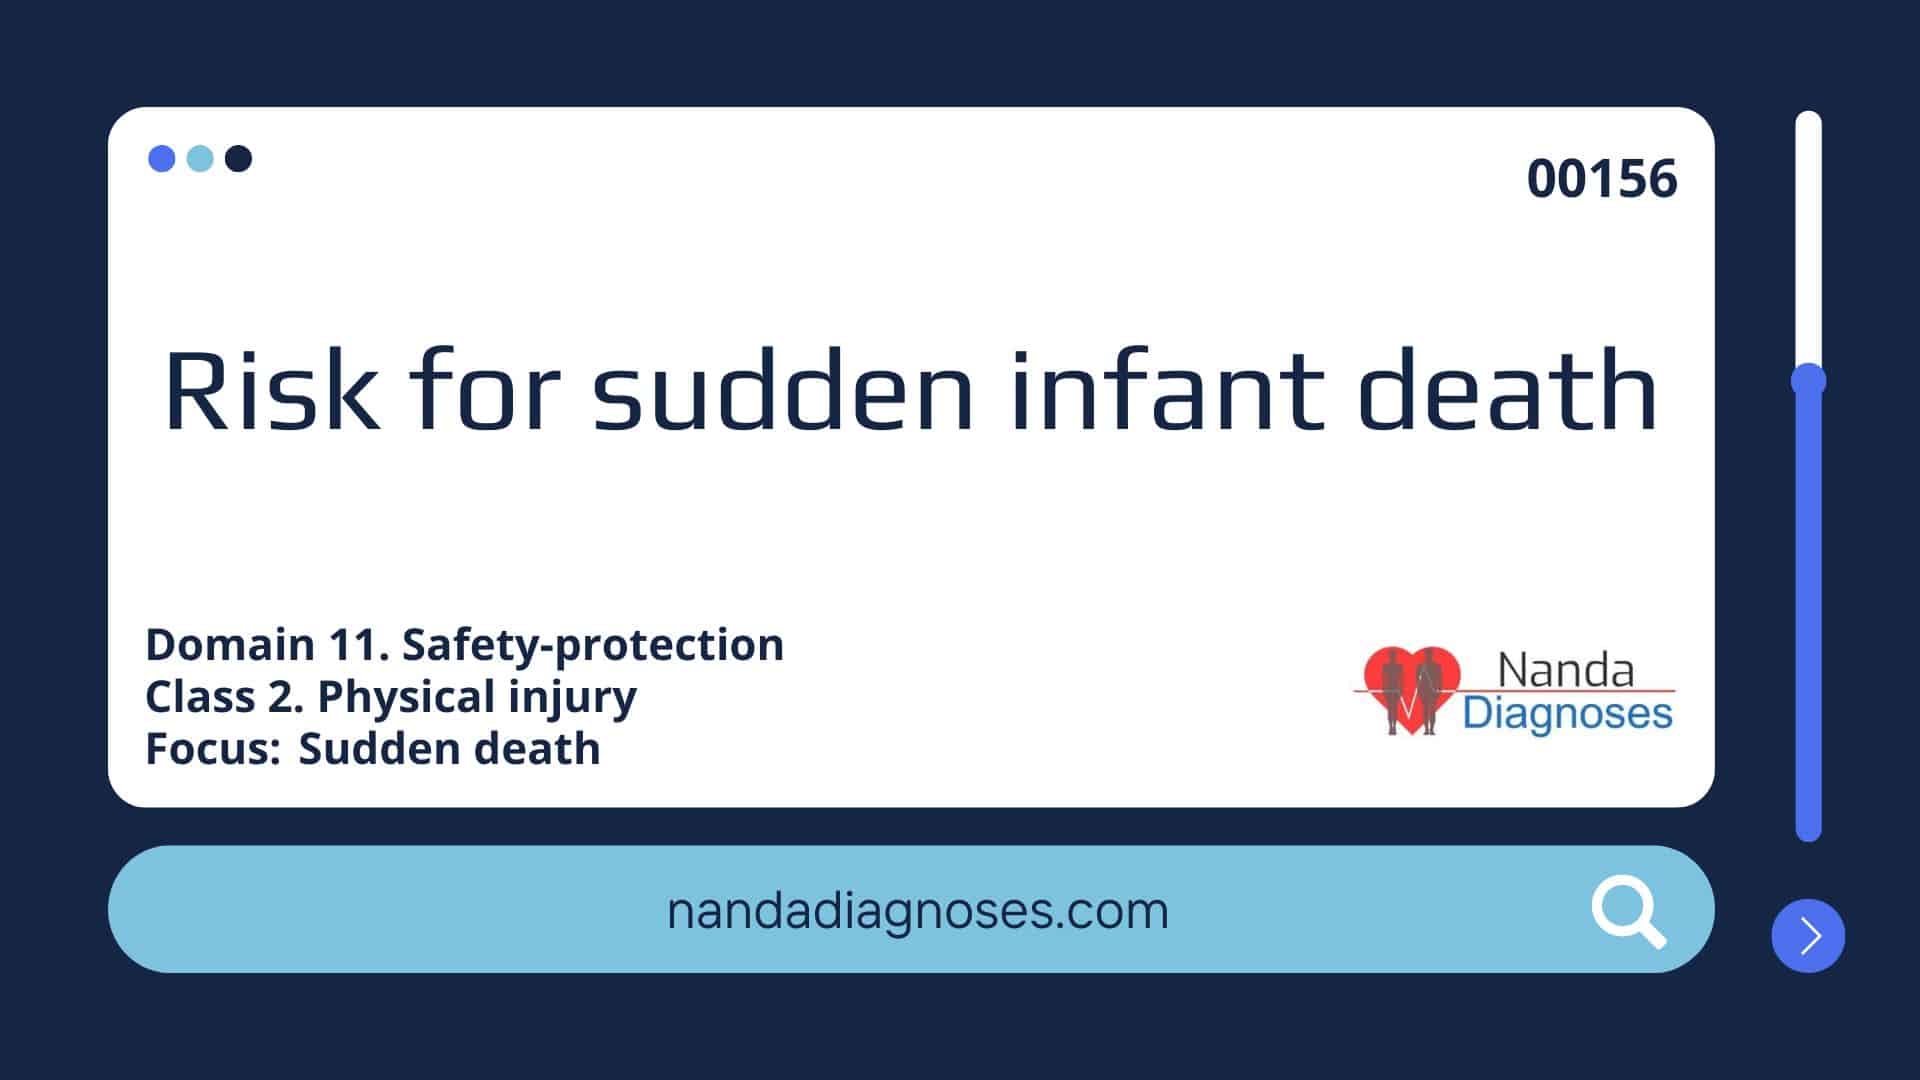 Nursing diagnosis Risk for sudden infant death